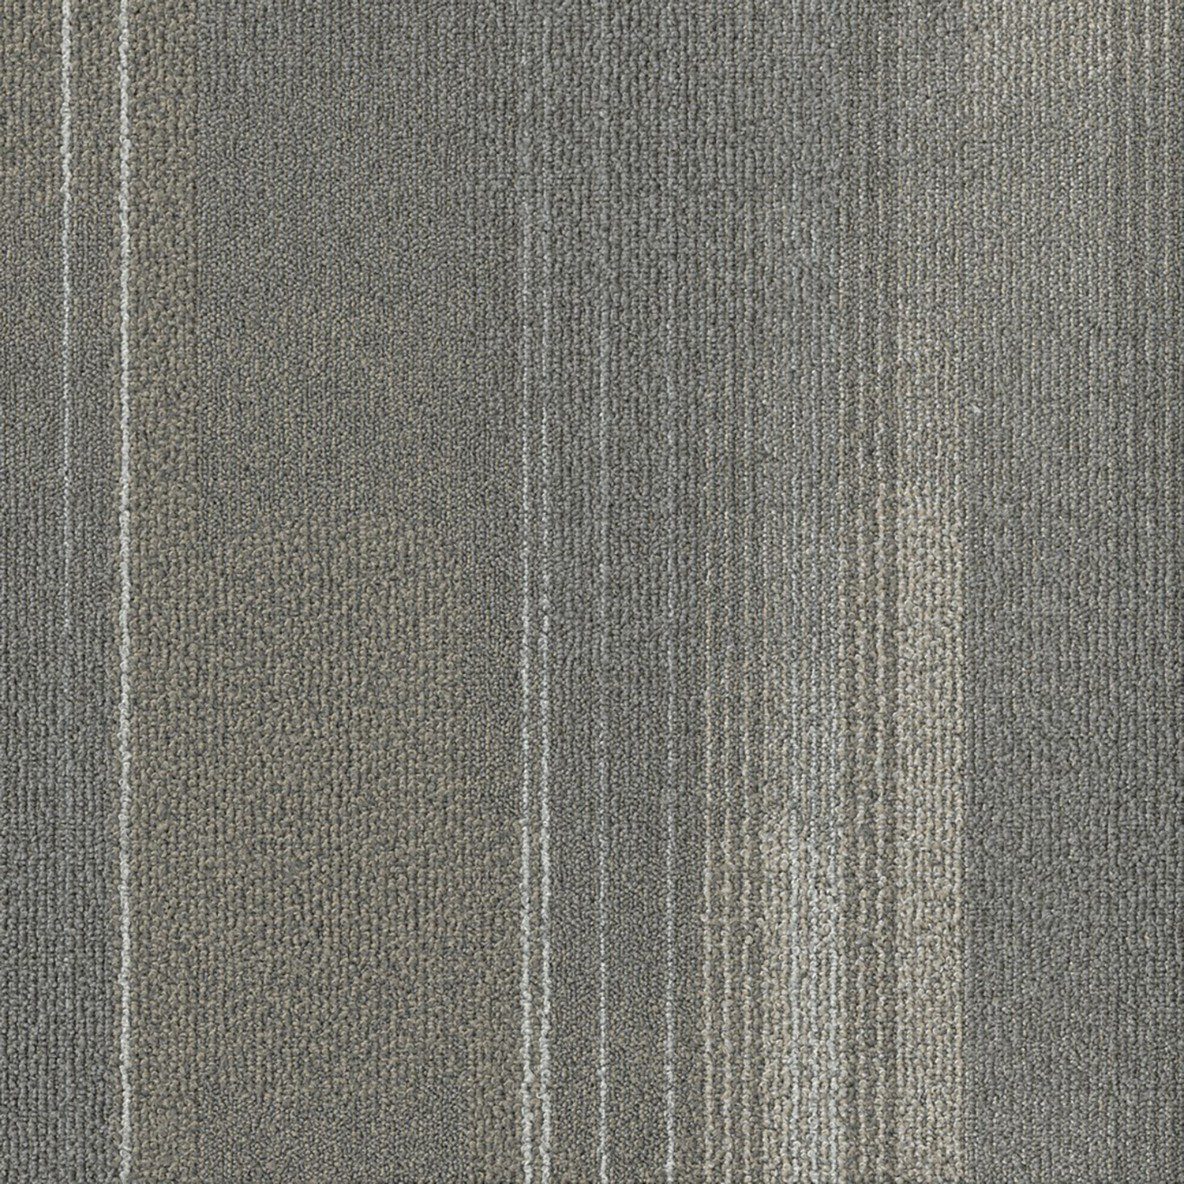 Stone color close Diversions Commercial Carpet Tile .42 Inch x 50x50 cm per Tile